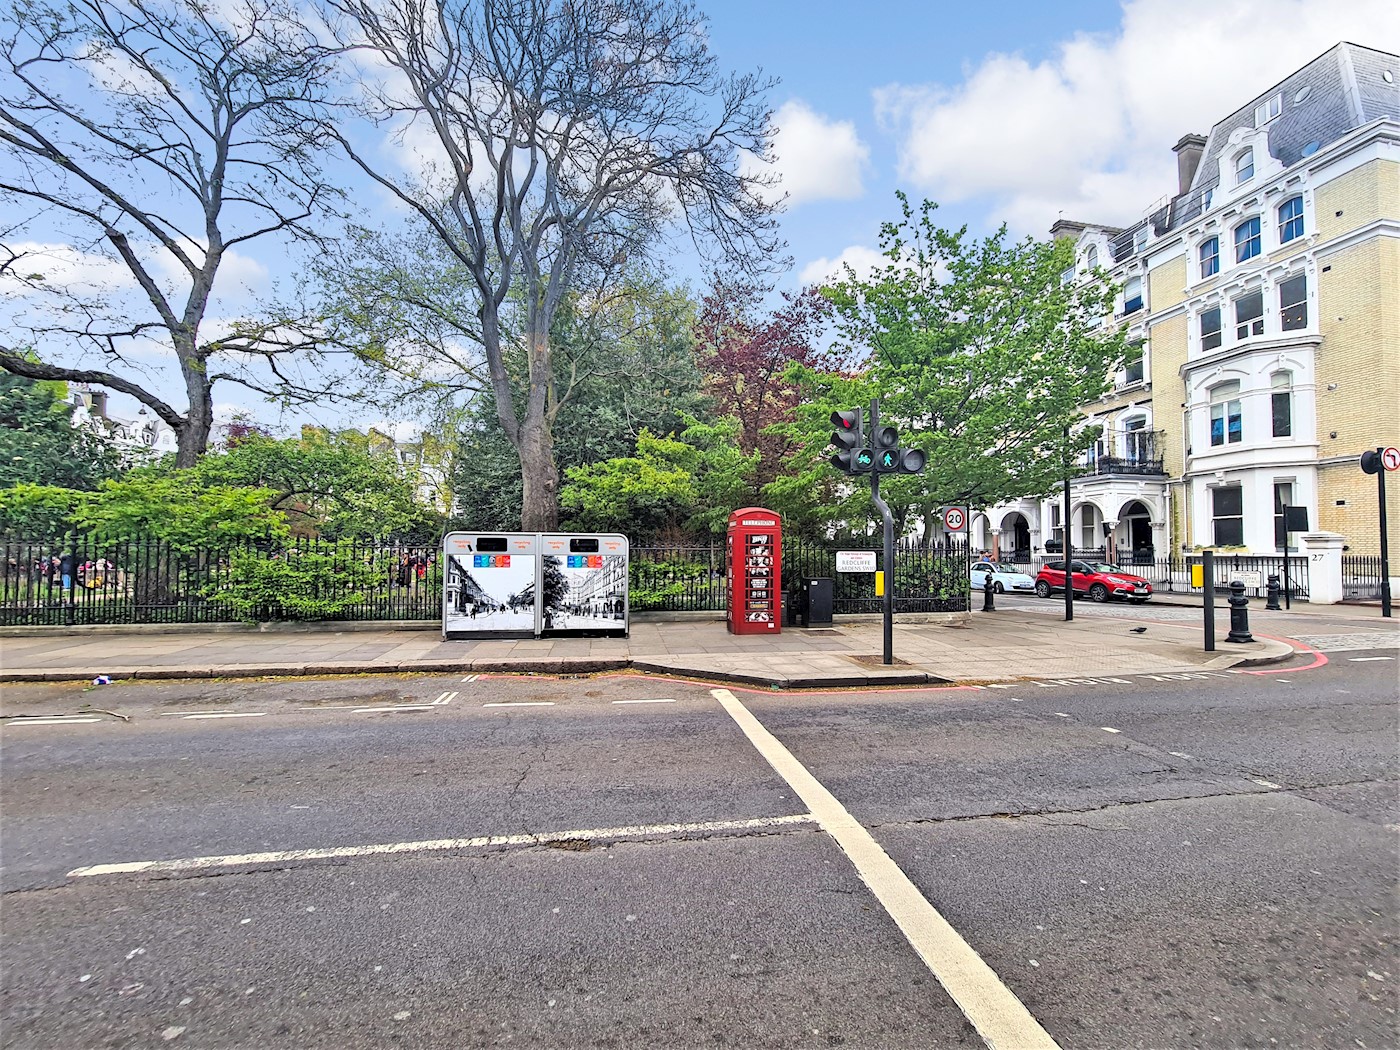 Telephone Kiosk, opposite St Lukes Church, Redcliffe Square, Chelsea, SW10 9HF 1/3